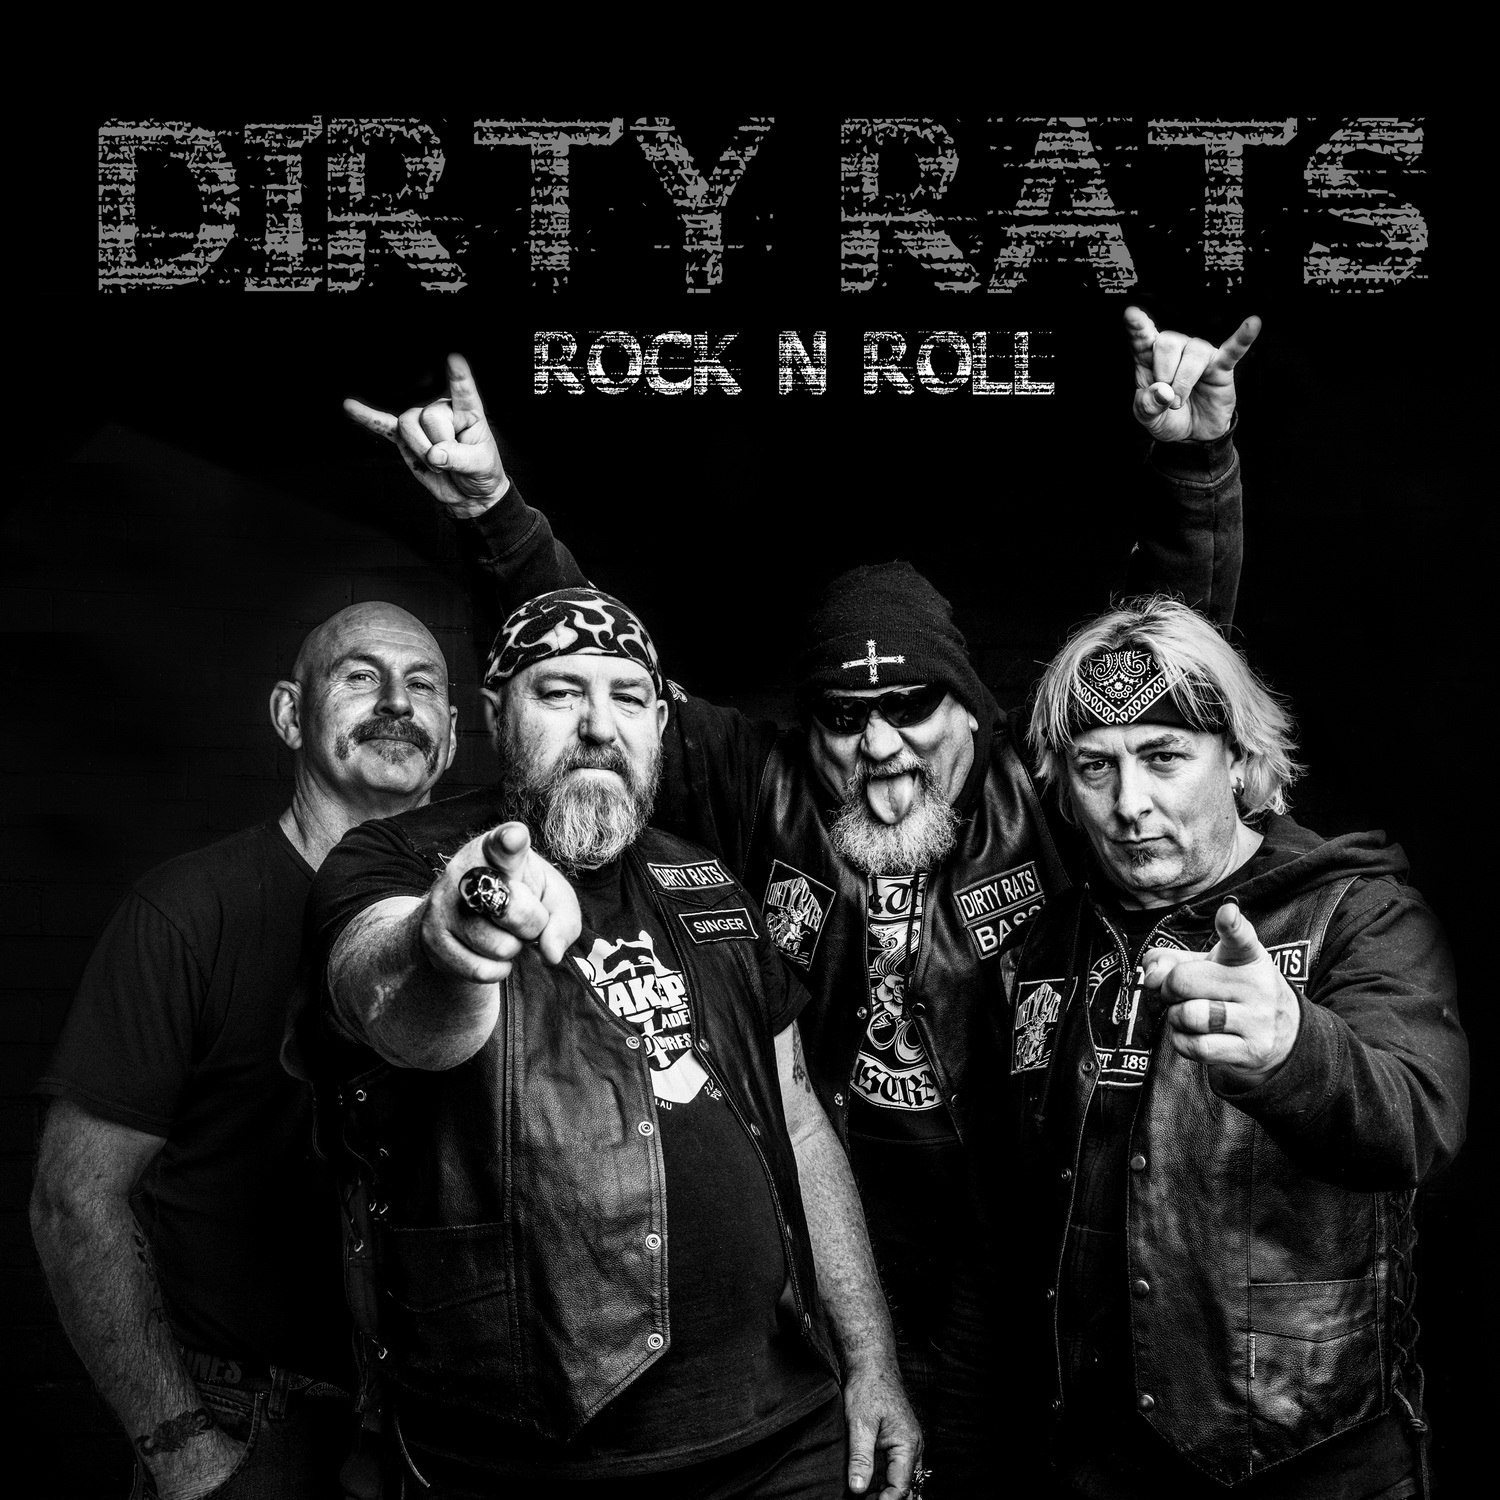 dirty-rats-rock-n-roll-toechter-sperrt-eure-muetter-ein-cd-review